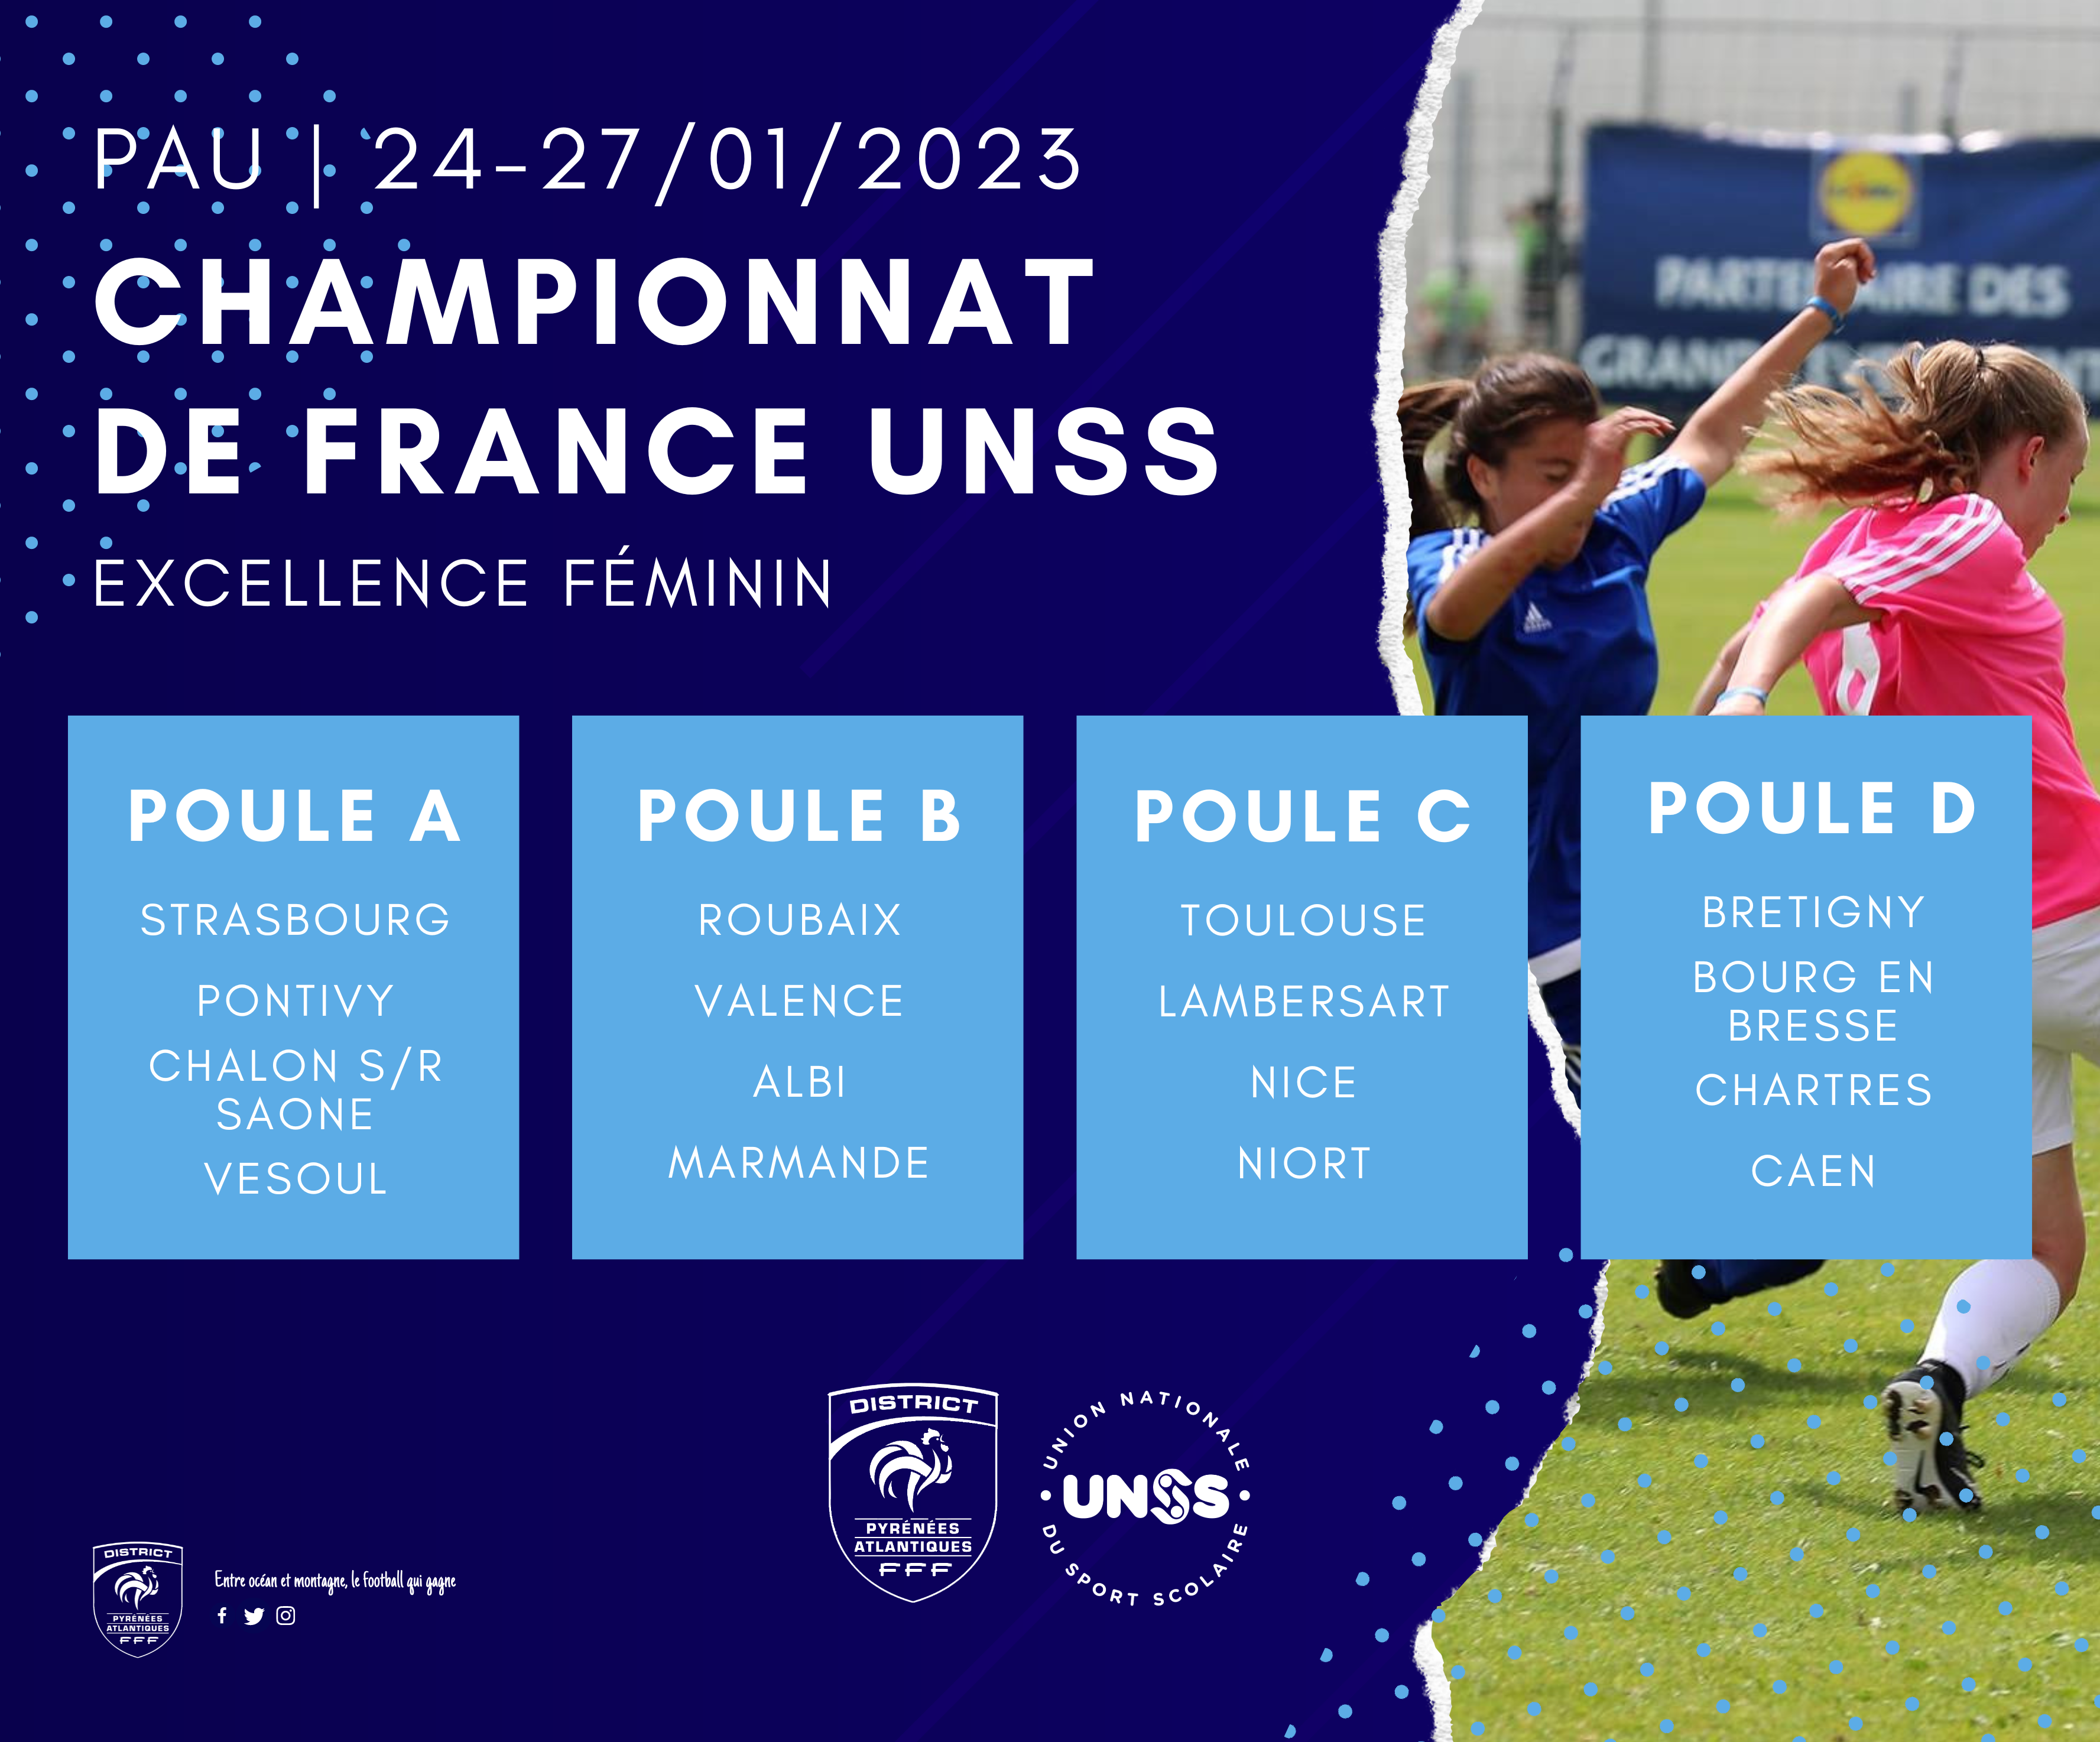 Le championnat de France UNSS Excellence Féminin sinvite à image pic